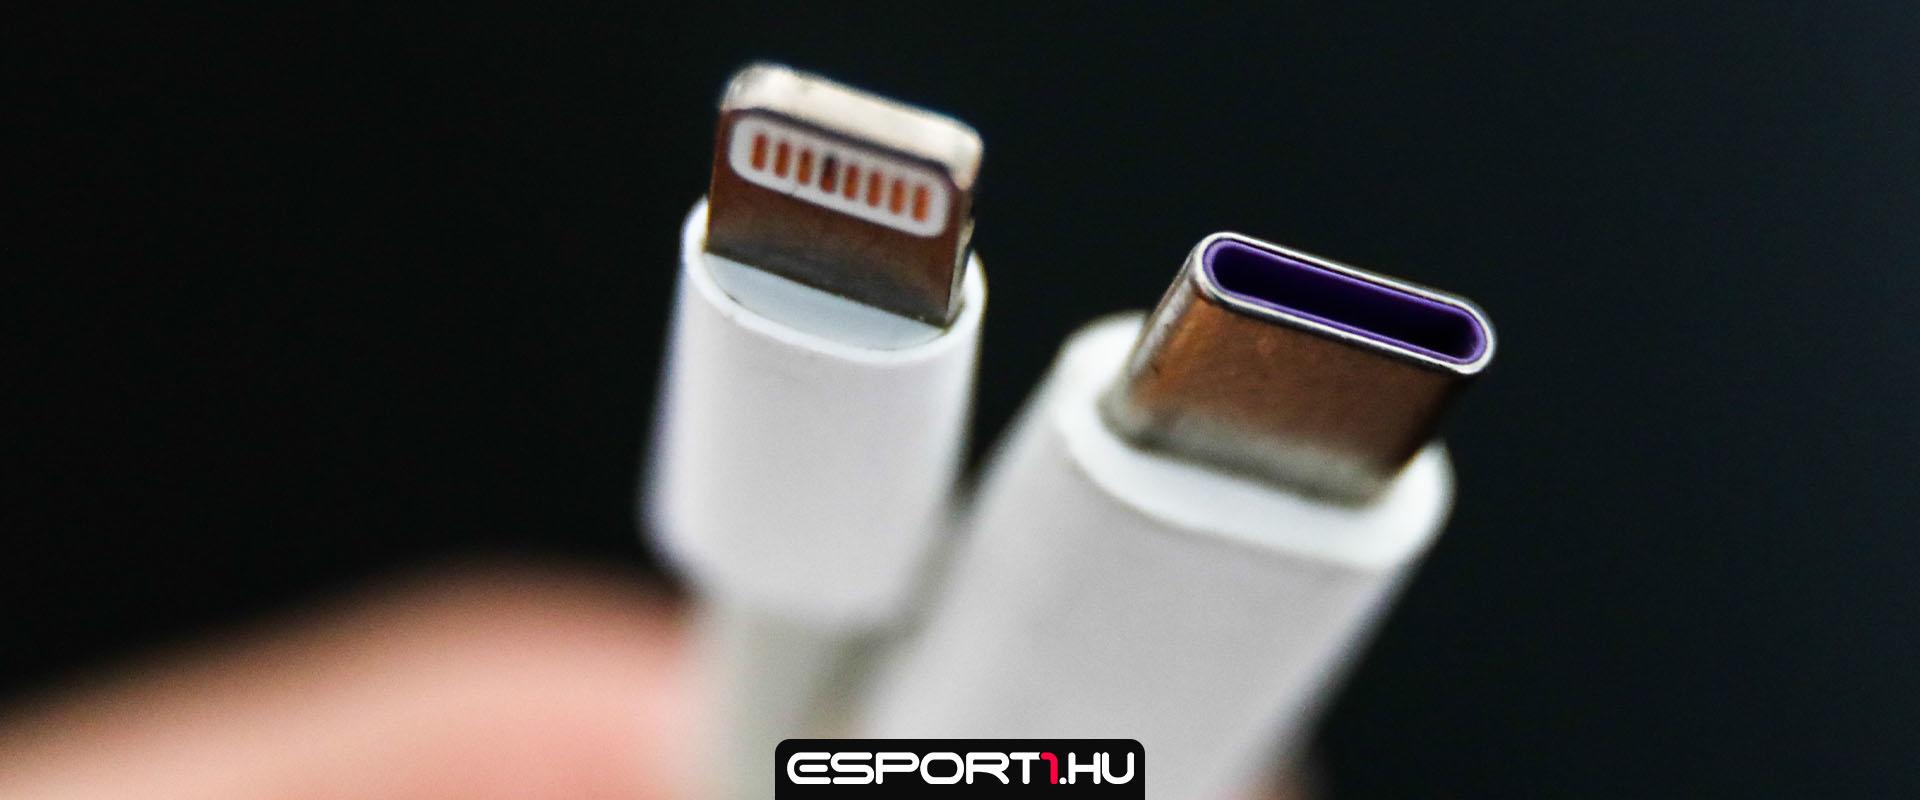 2024-től a legtöbb hordozható eszközhöz USB-C portra lesz szükség az EU-ban